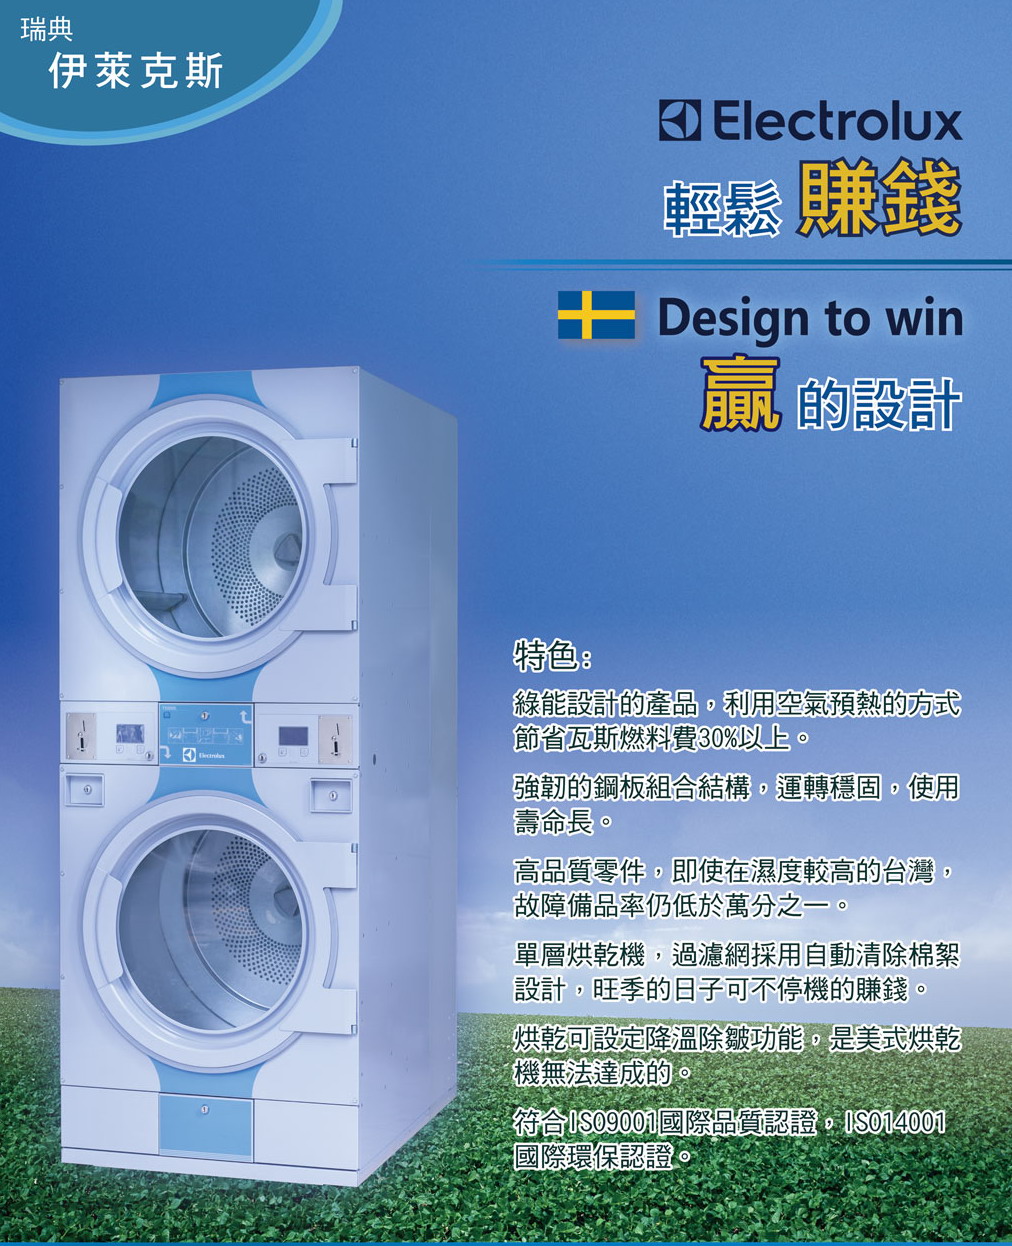 瑞典ELECTROLUX-自助洗衣創業 - 20170219222300-515436088.jpg(圖)